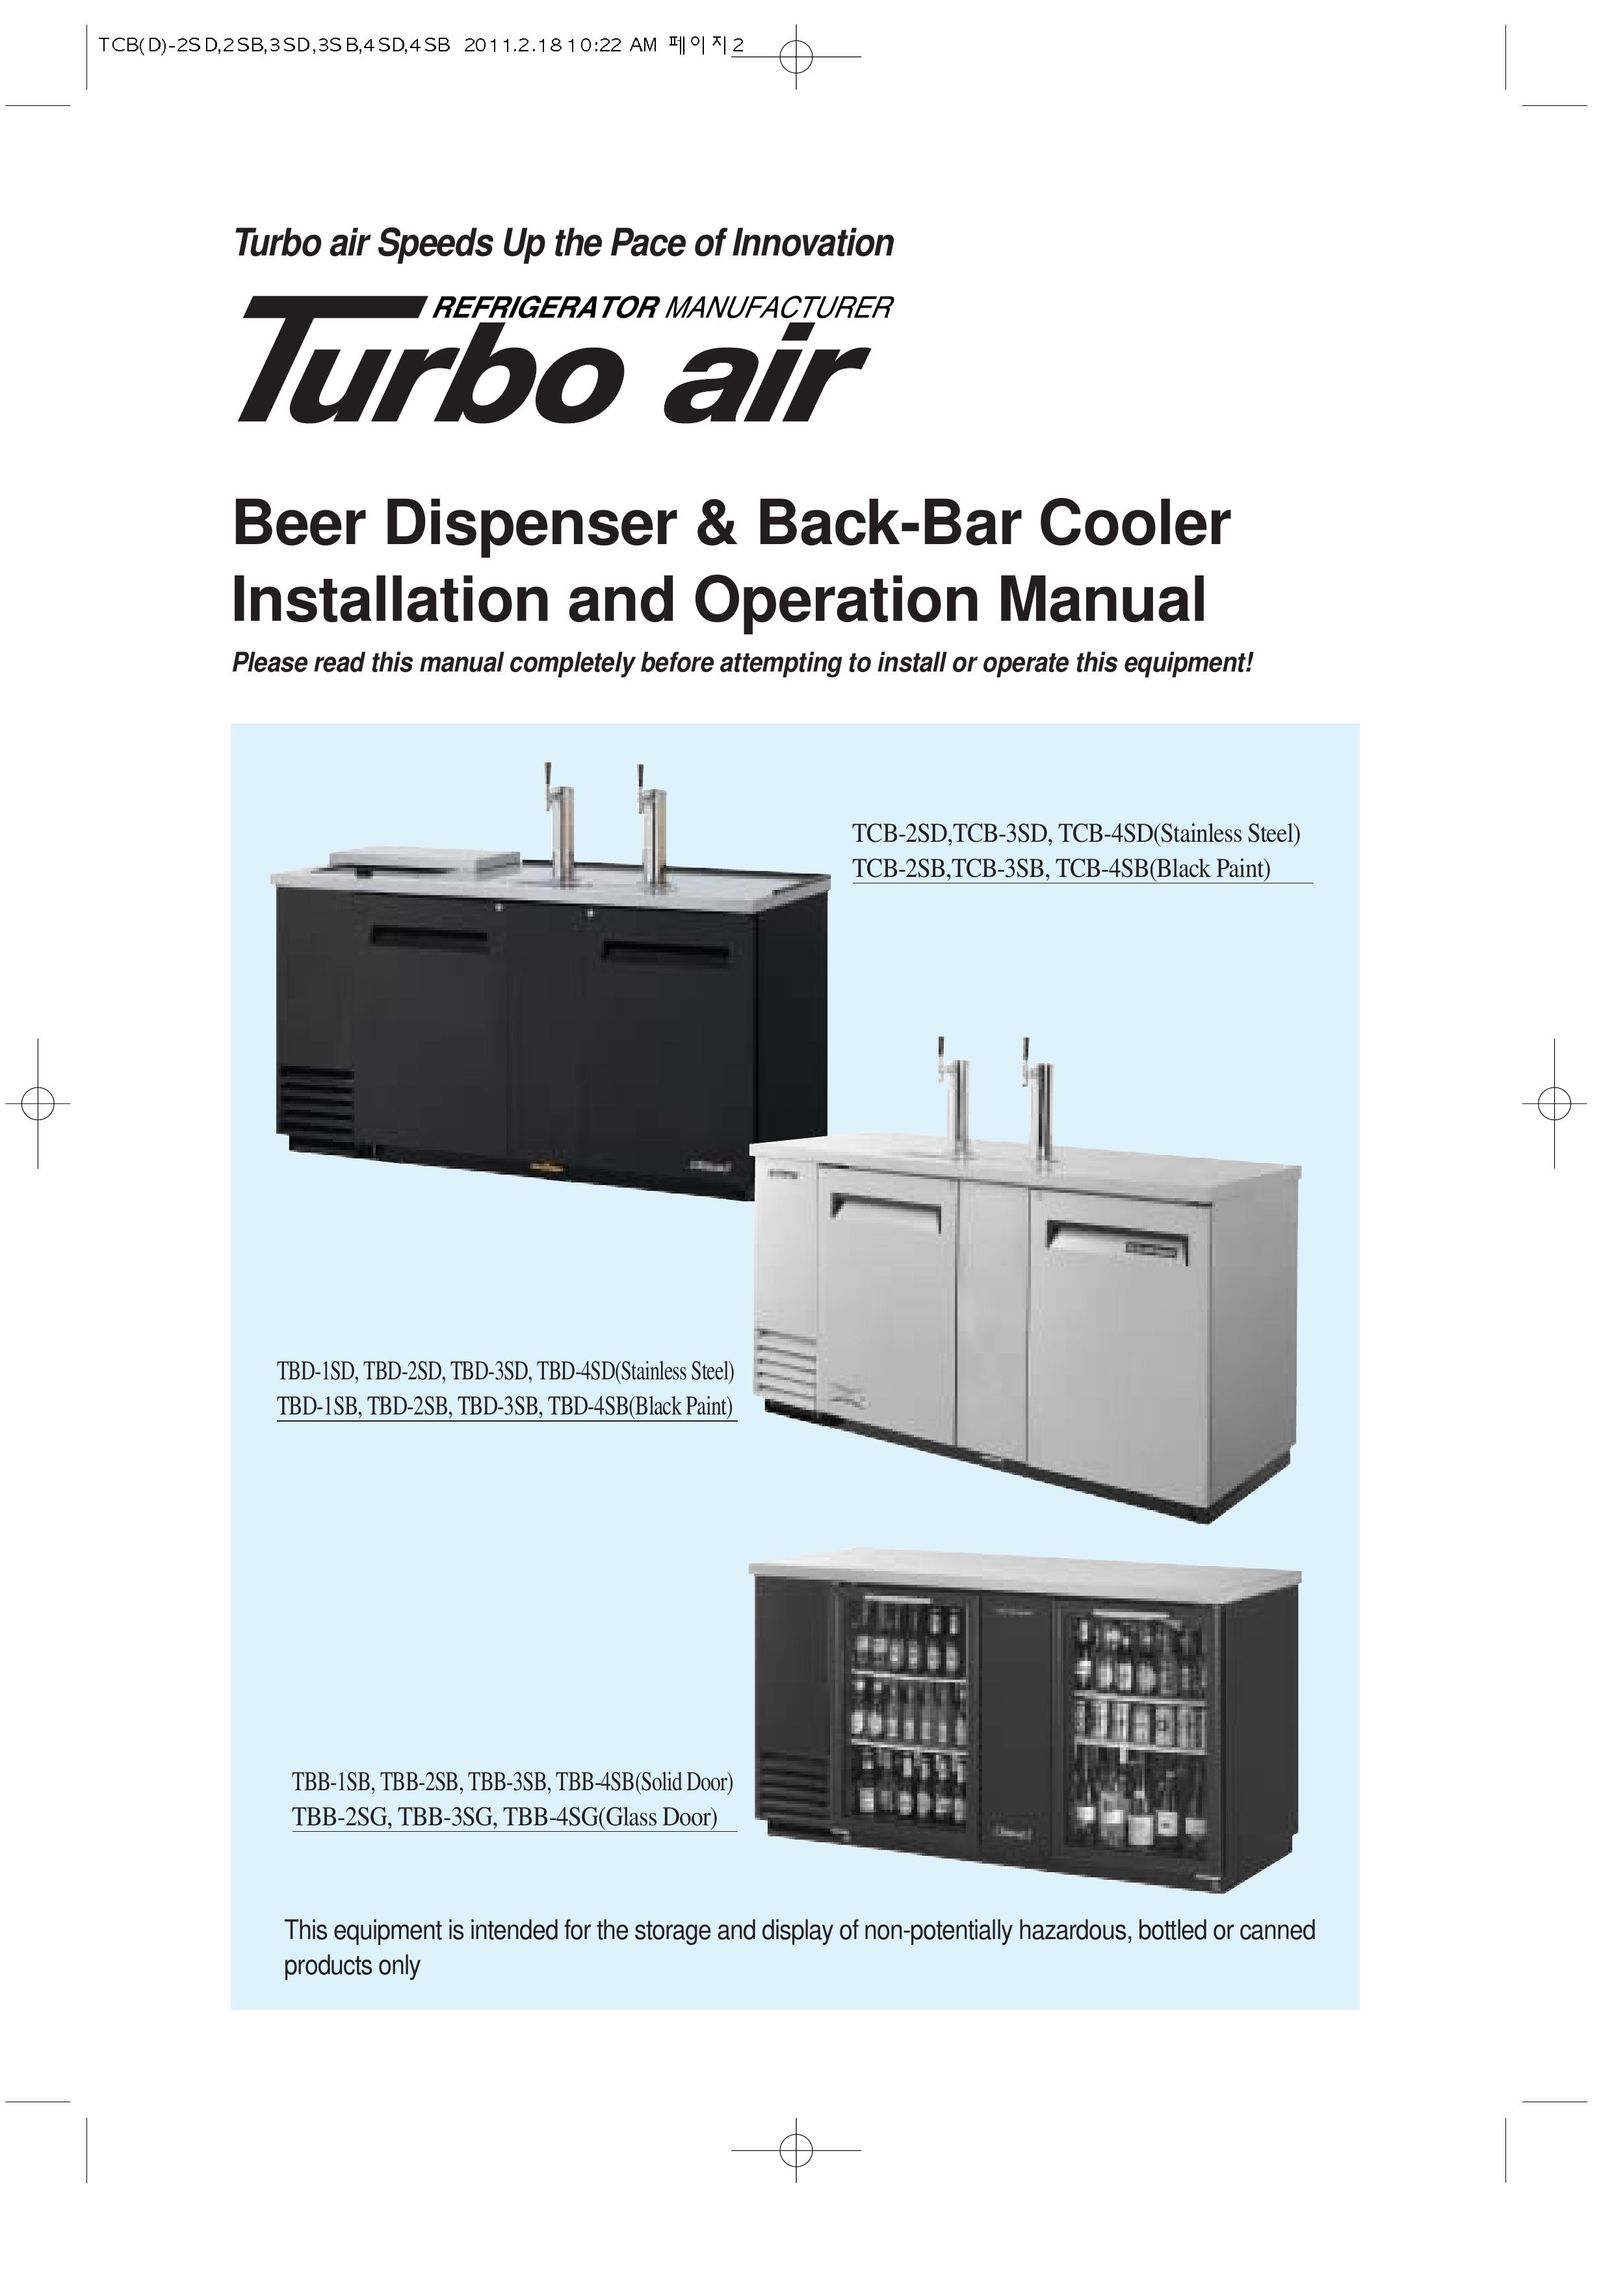 Turbo Air TCB-3SB Beverage Dispenser User Manual